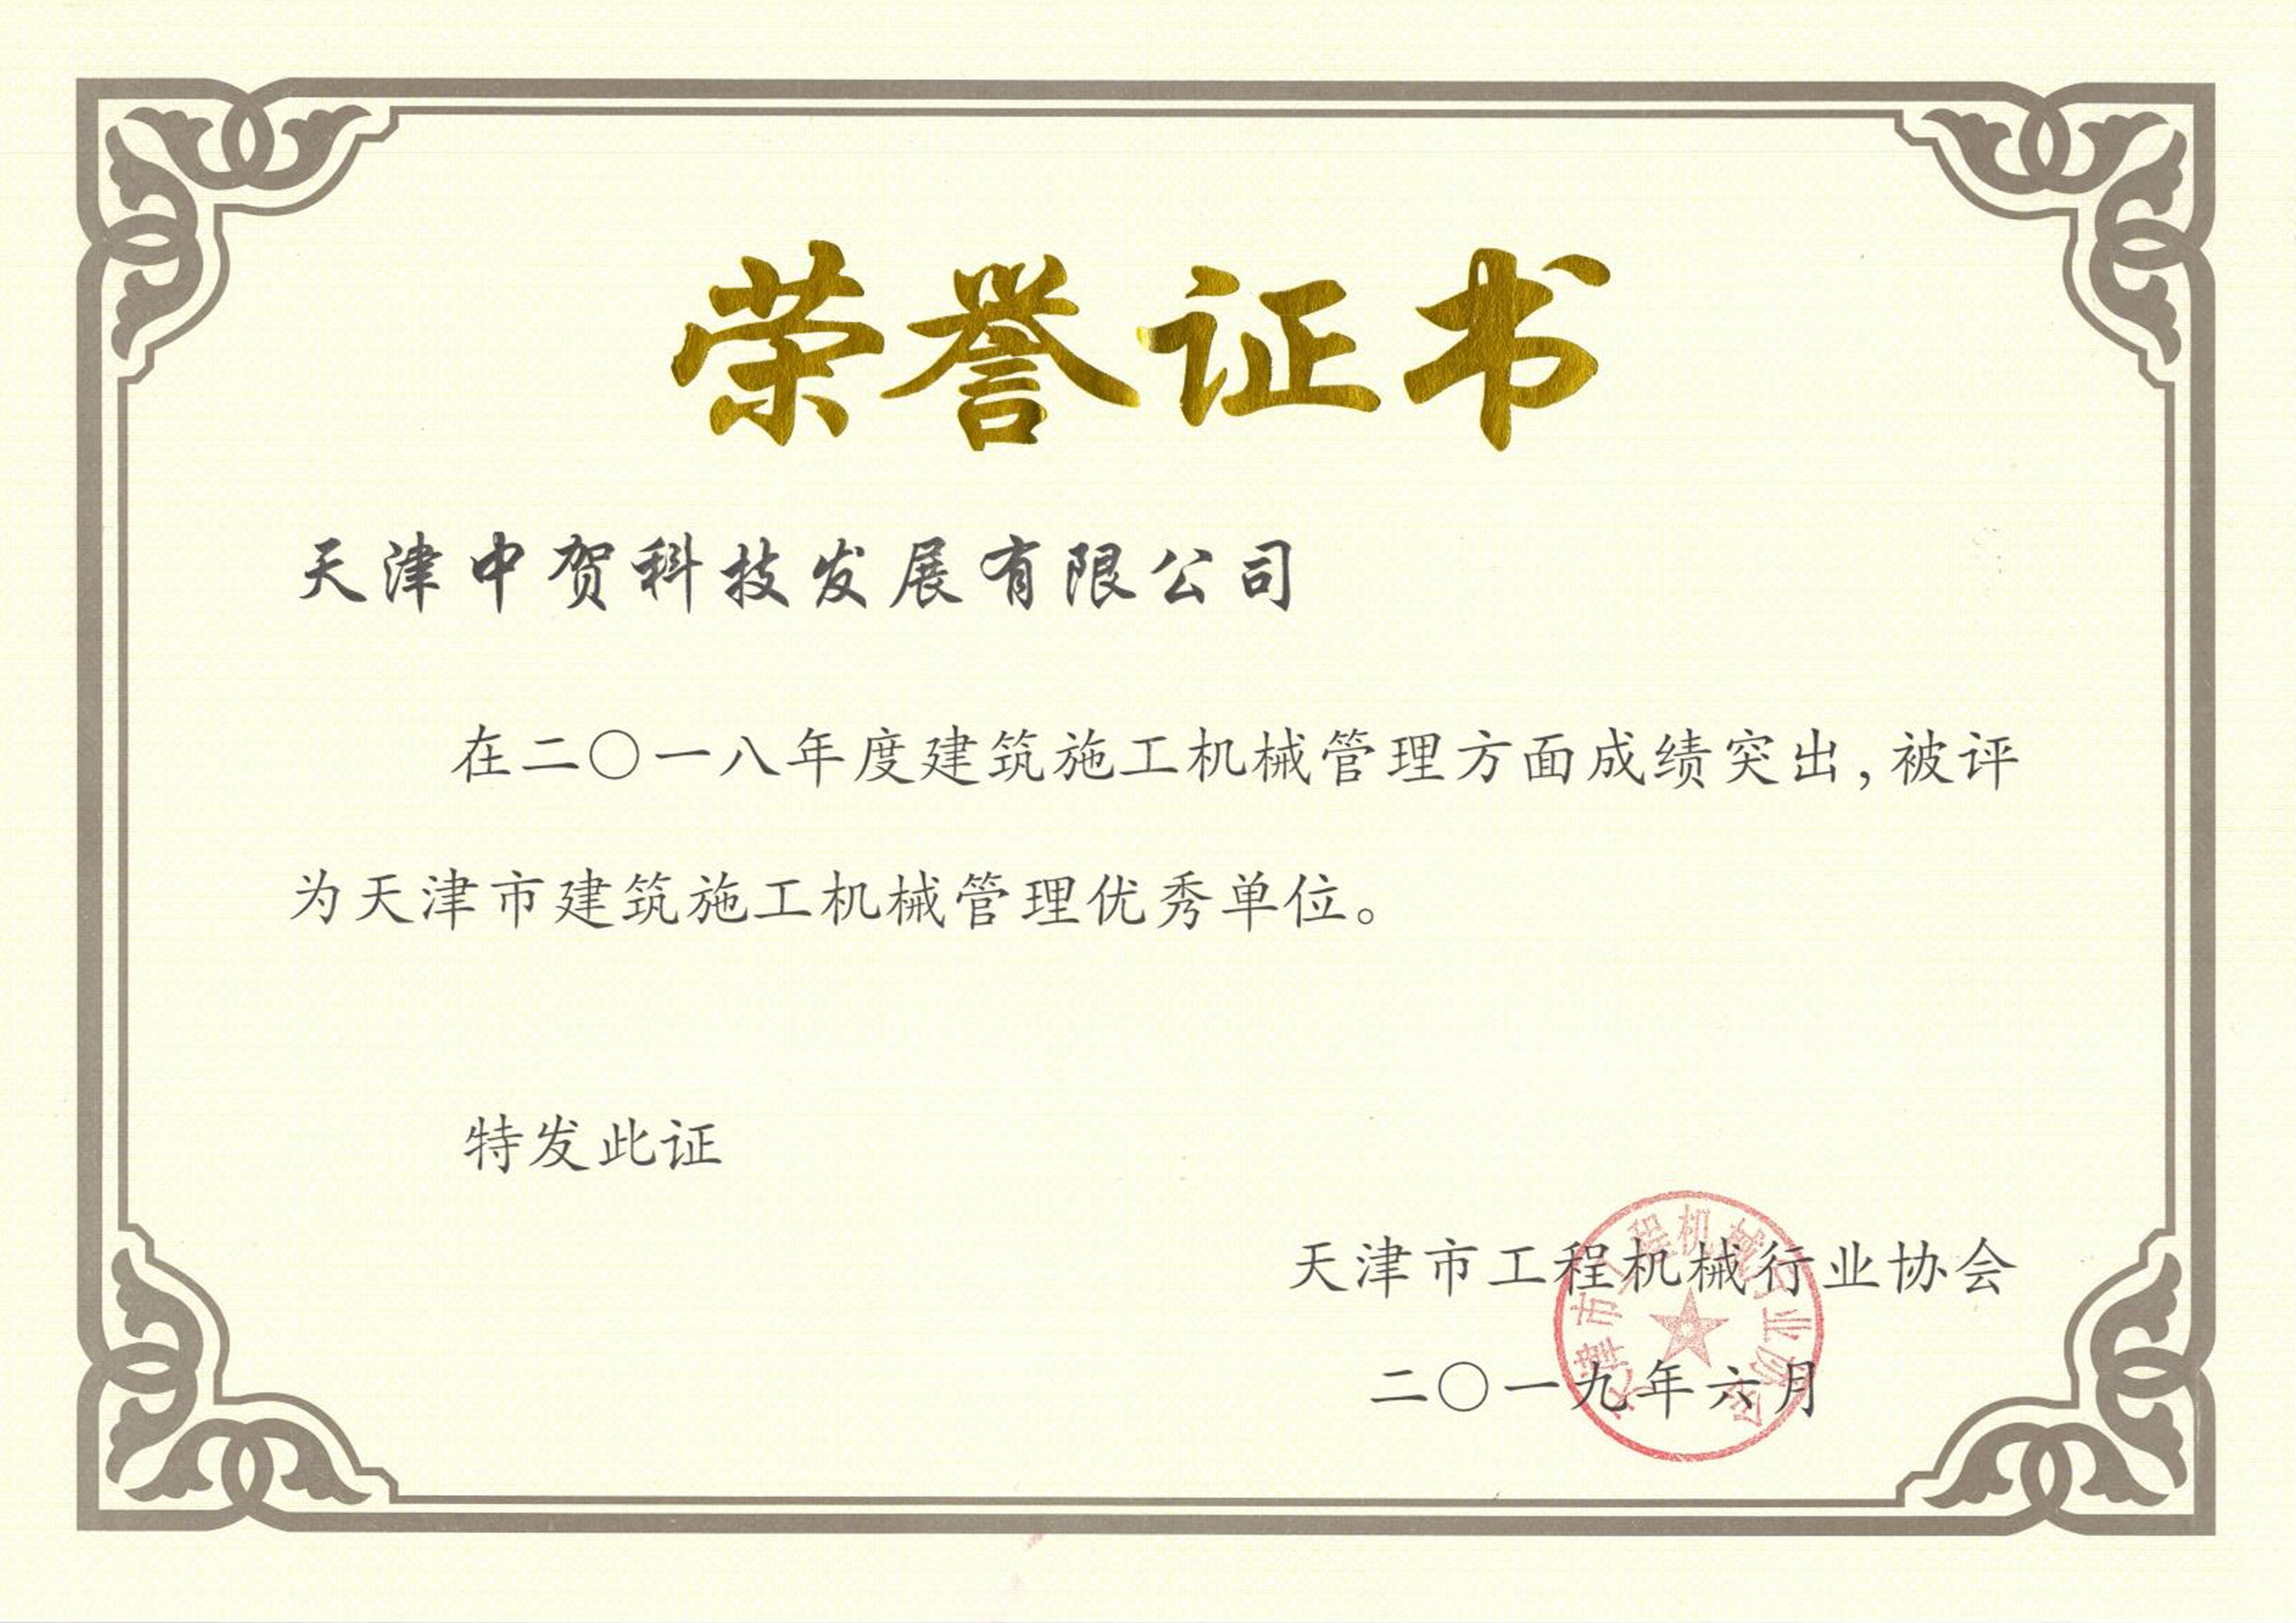 2.7.1中贺建筑施工机械管理优秀单位荣誉证书-A4-0619